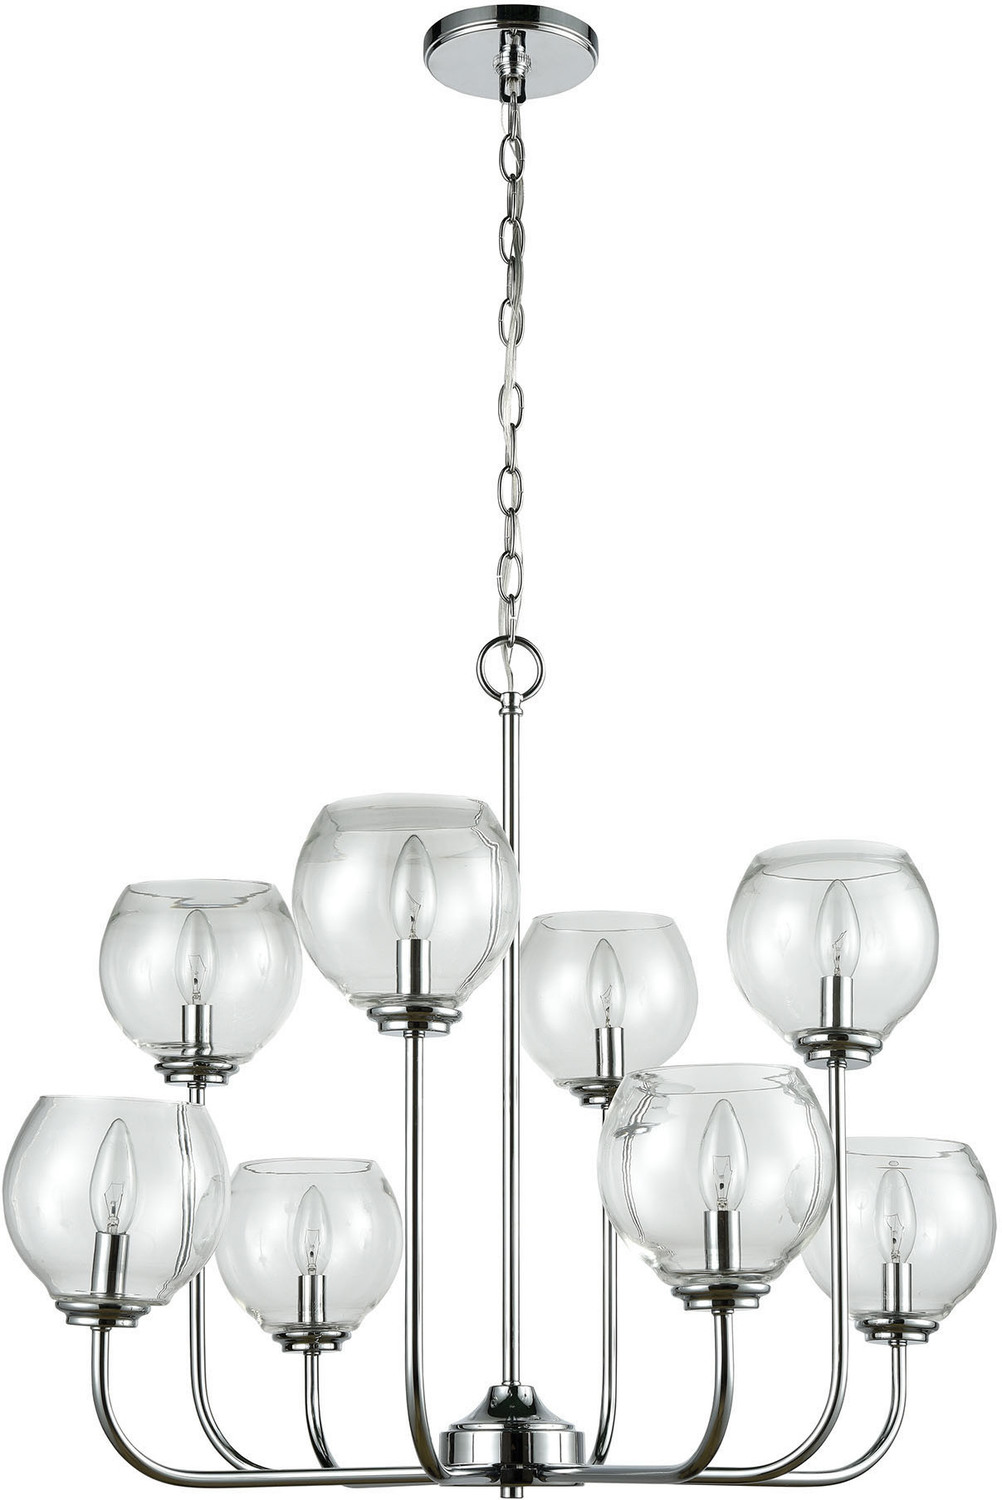 modern 5 light chandelier ELK Lighting Chandelier Polished Chrome Transitional